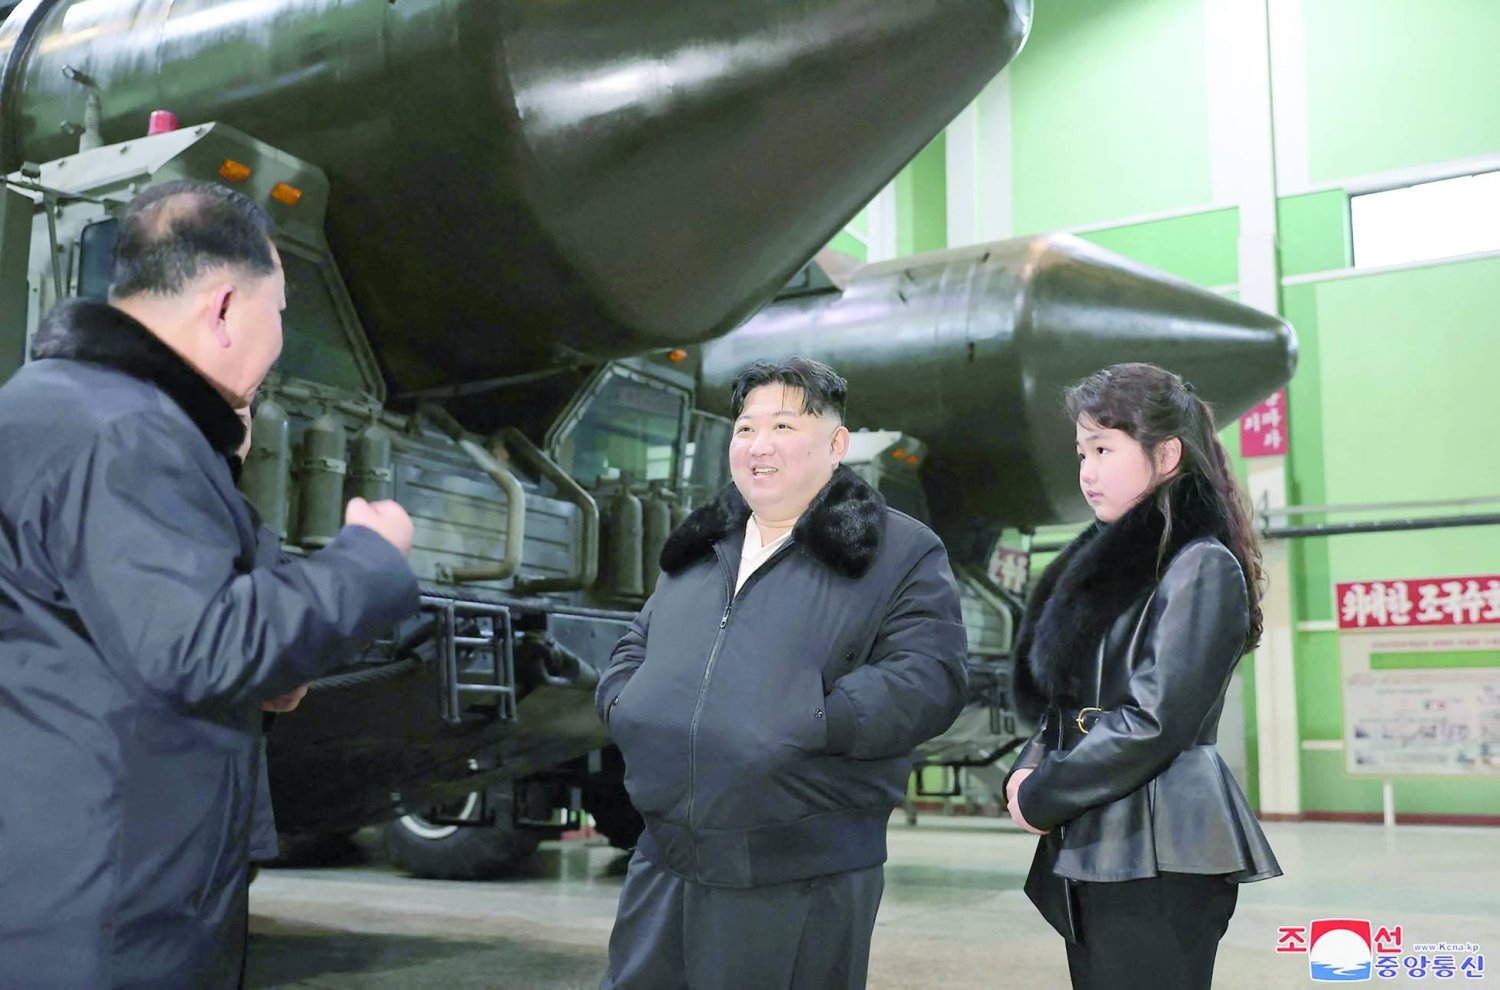 سيول تفرض عقوبات مرتبطة ببرامج كوريا الشمالية النووية